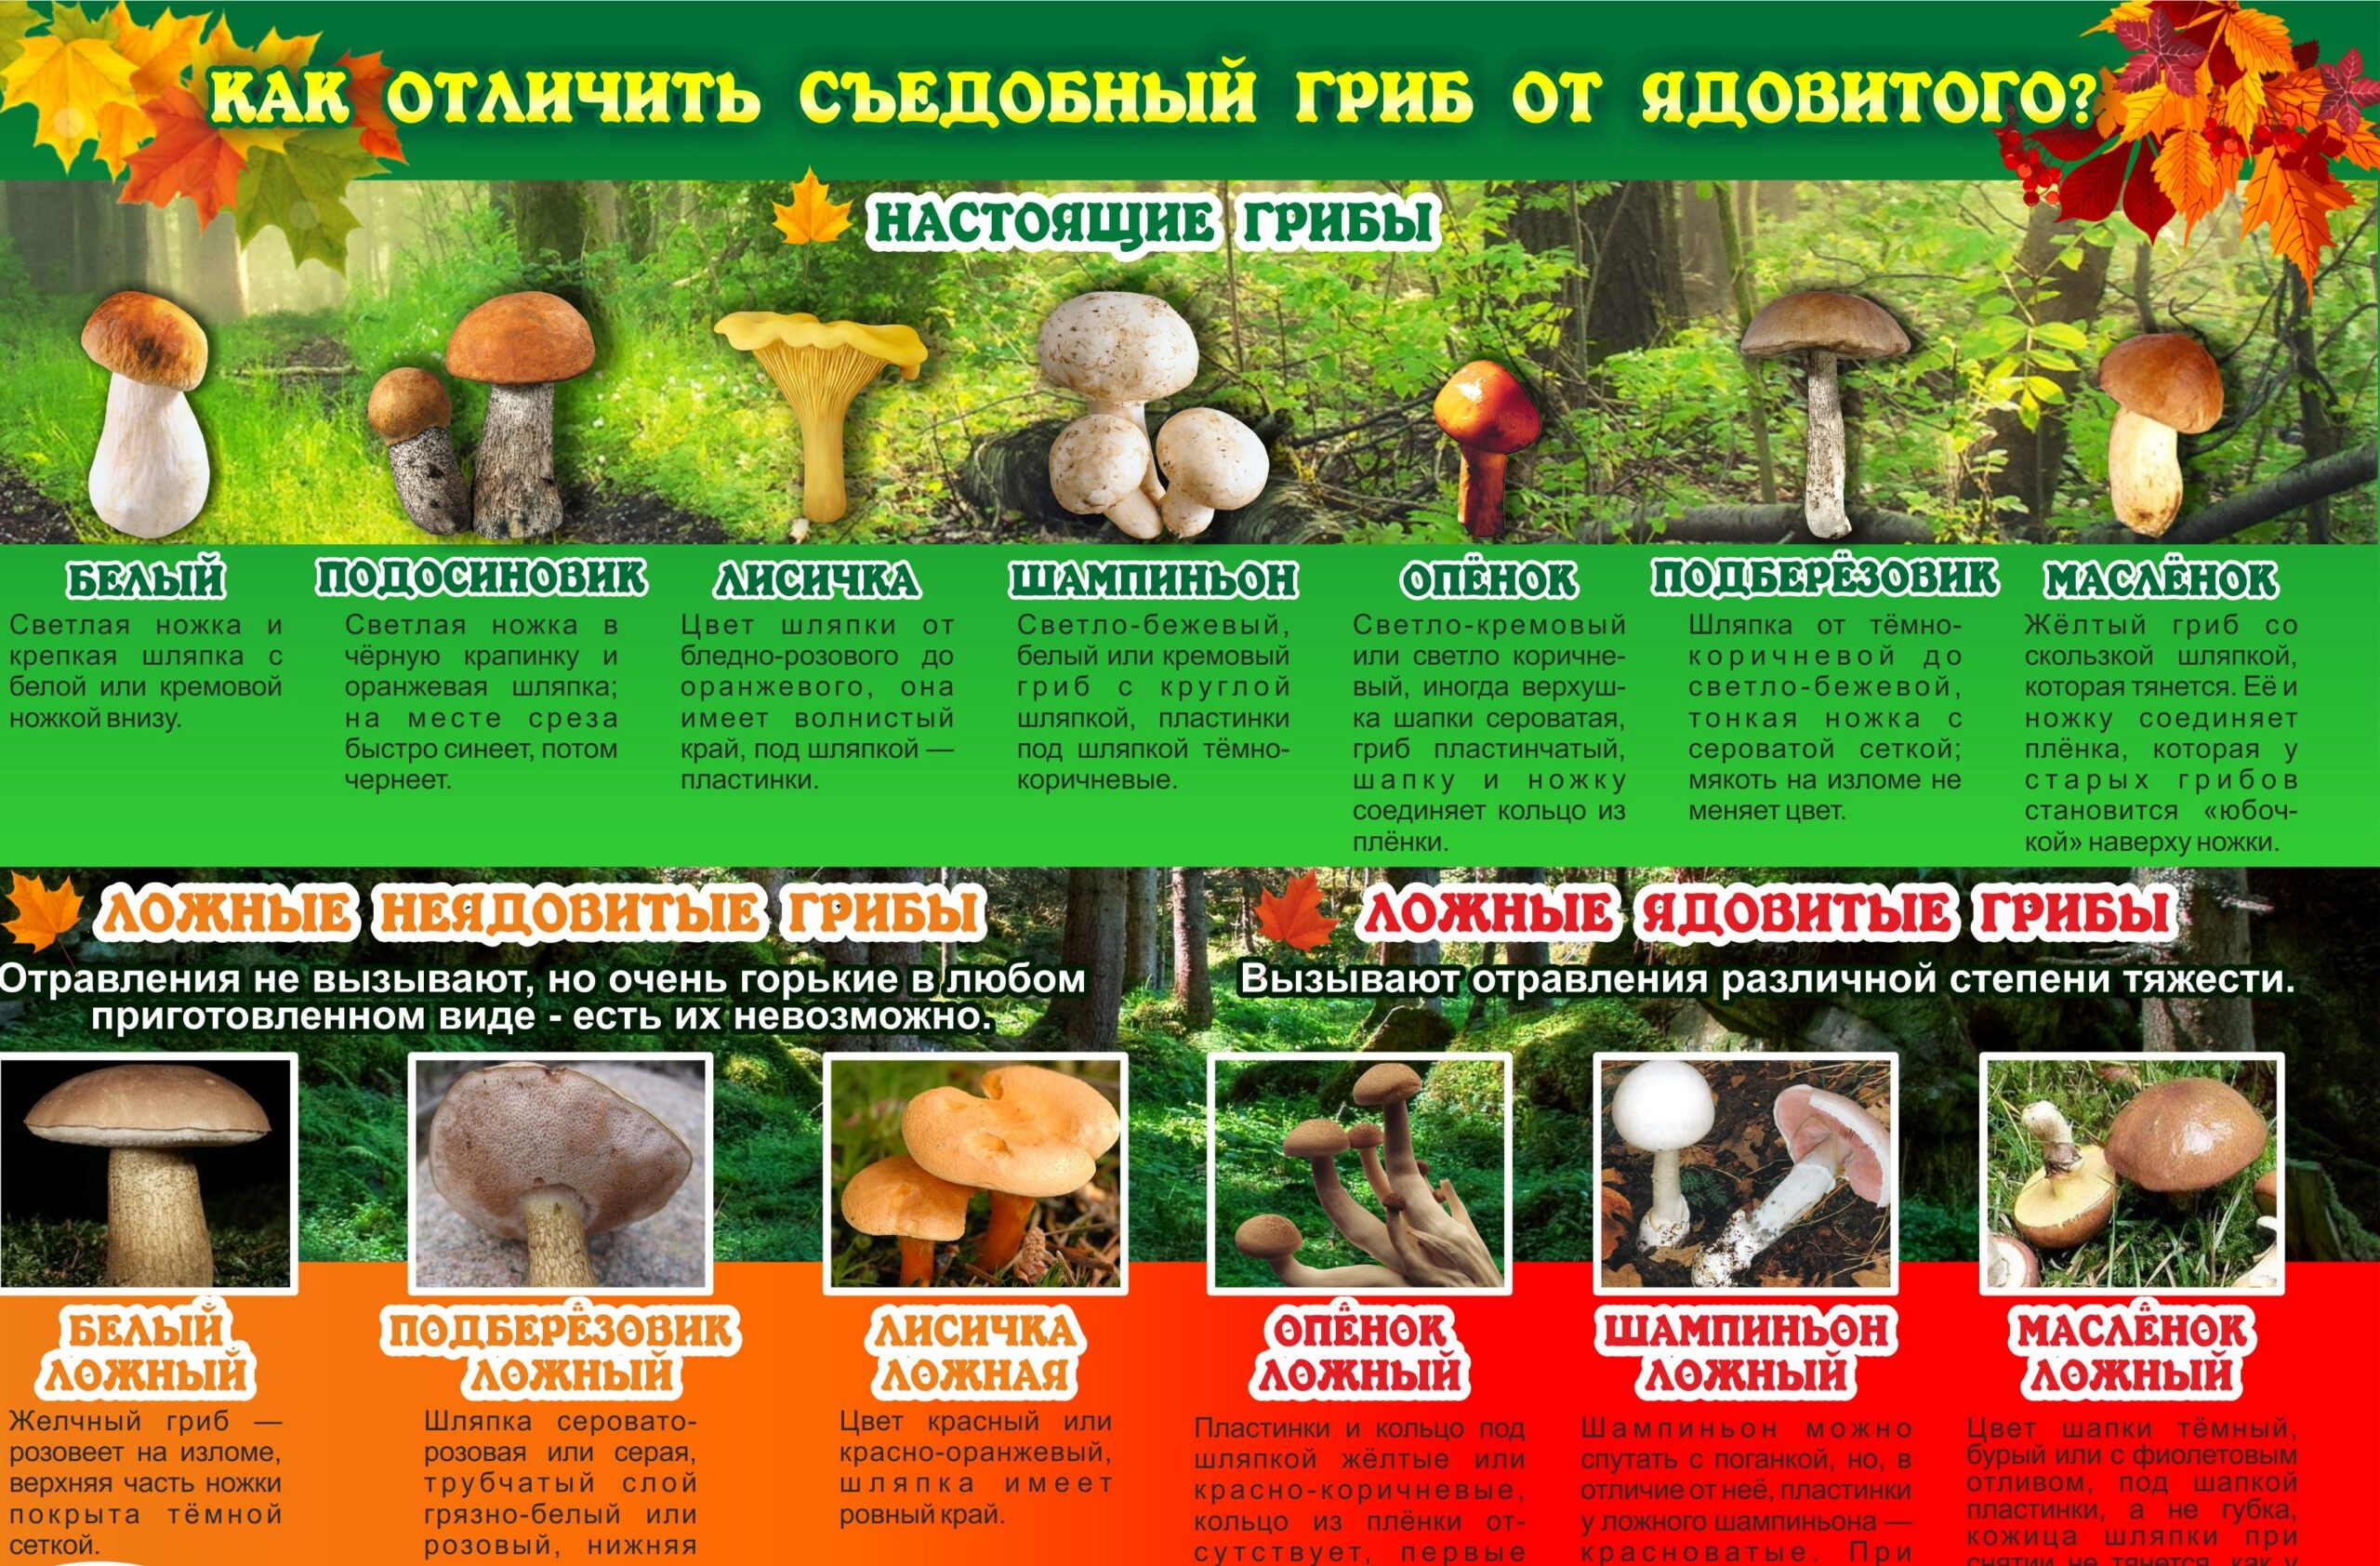 Картинка красивая о грибах